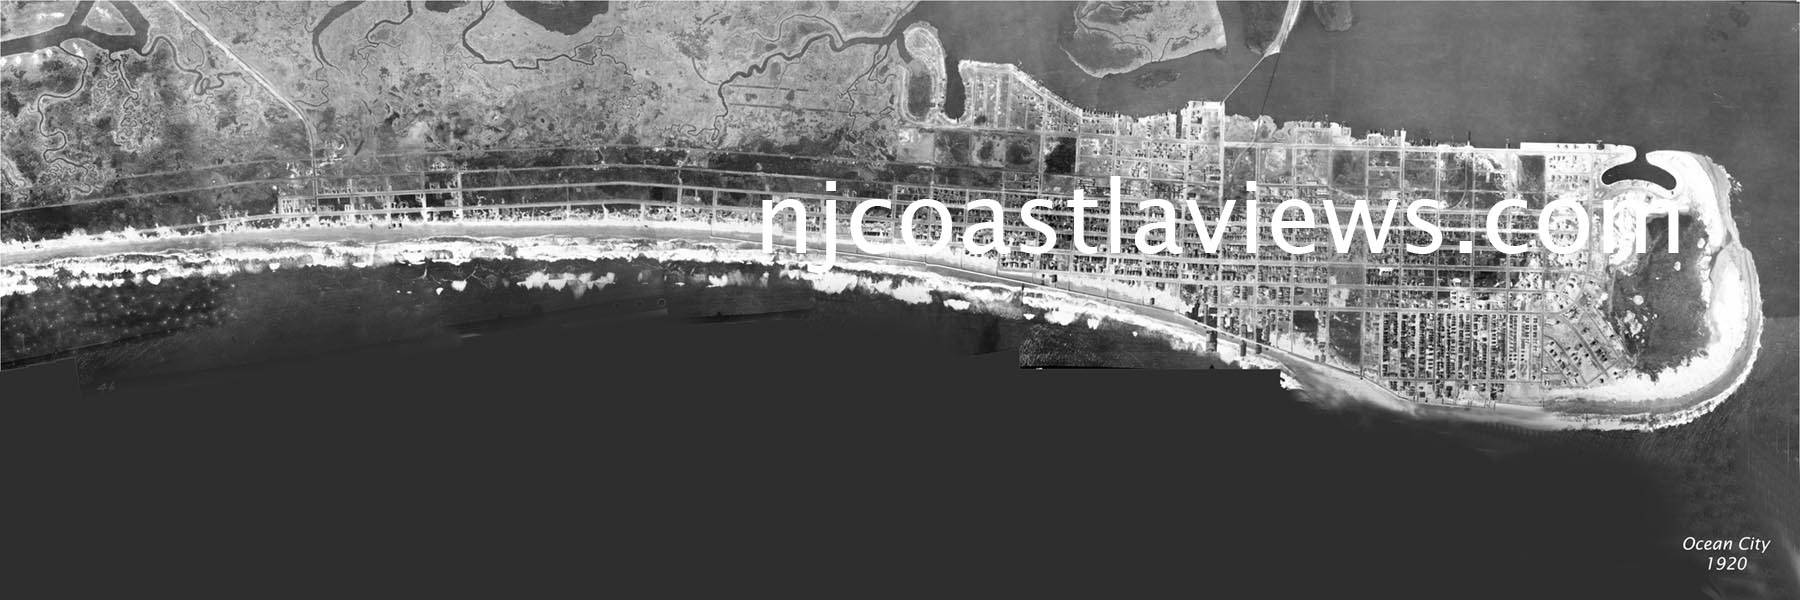 Ocean City 1920 1x3 ft